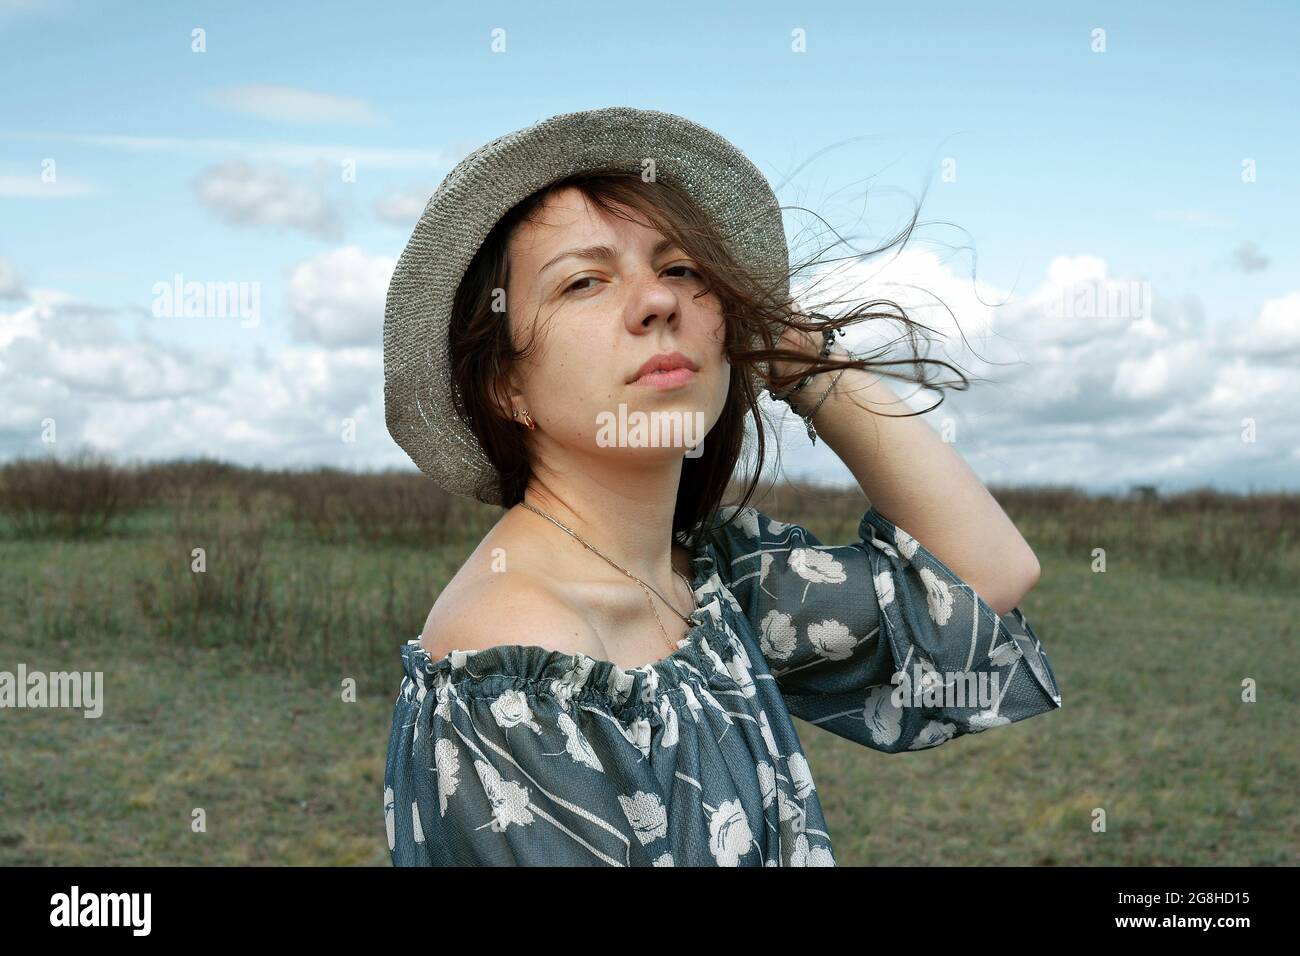 Ritratto di una ragazza in un cappello sul campo, guardando la macchina fotografica. Foto Stock